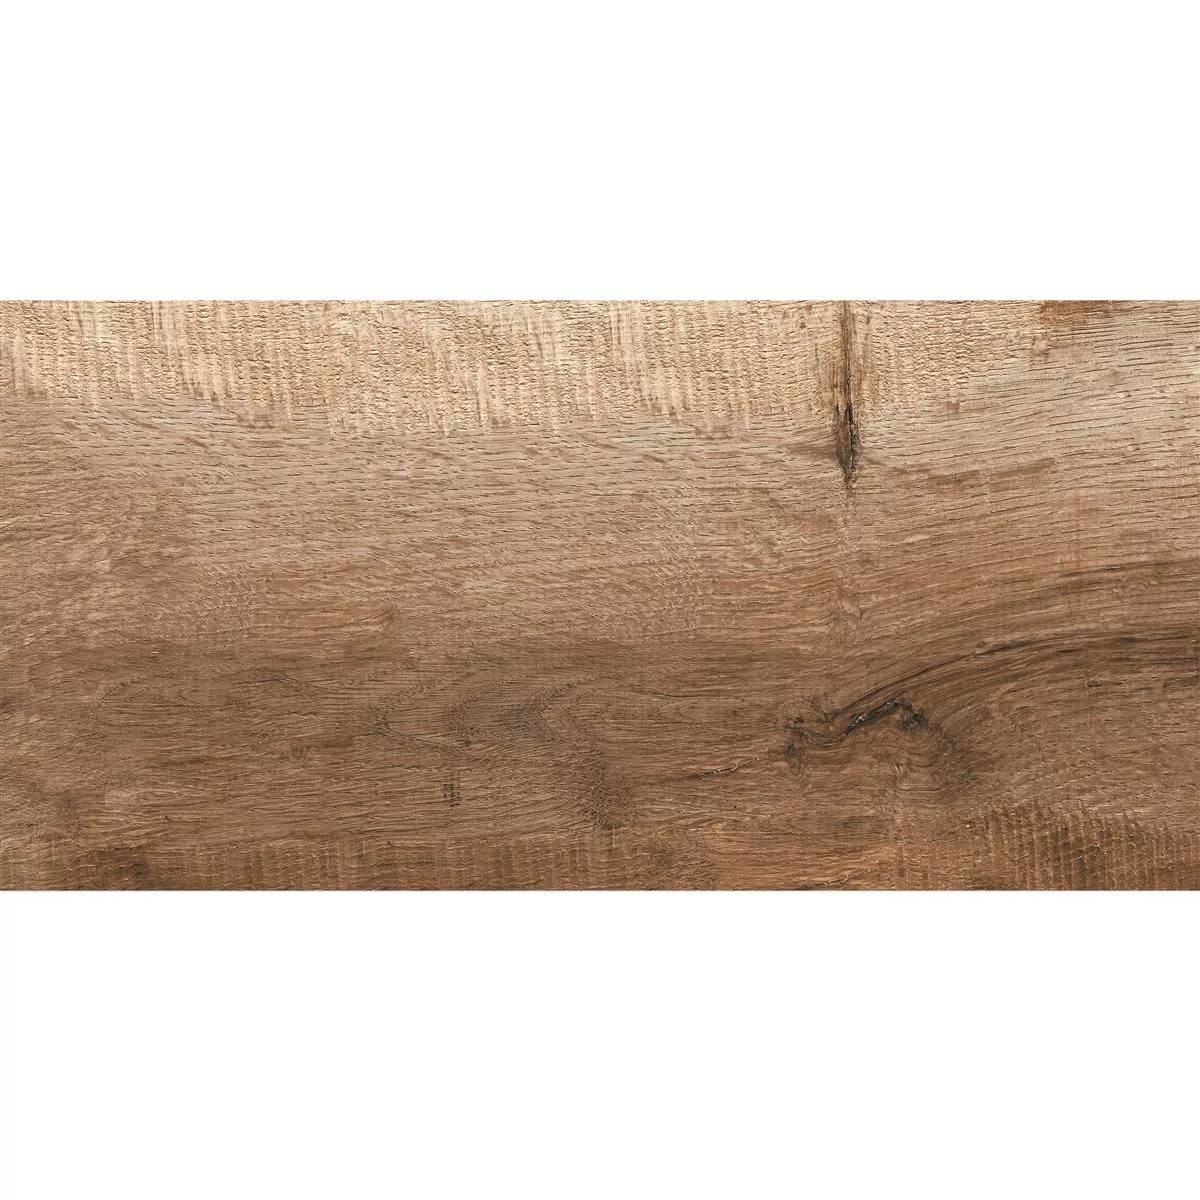 Płytki Podłogowe Goranboy Wygląd Drewna Natural 30x60cm / R10